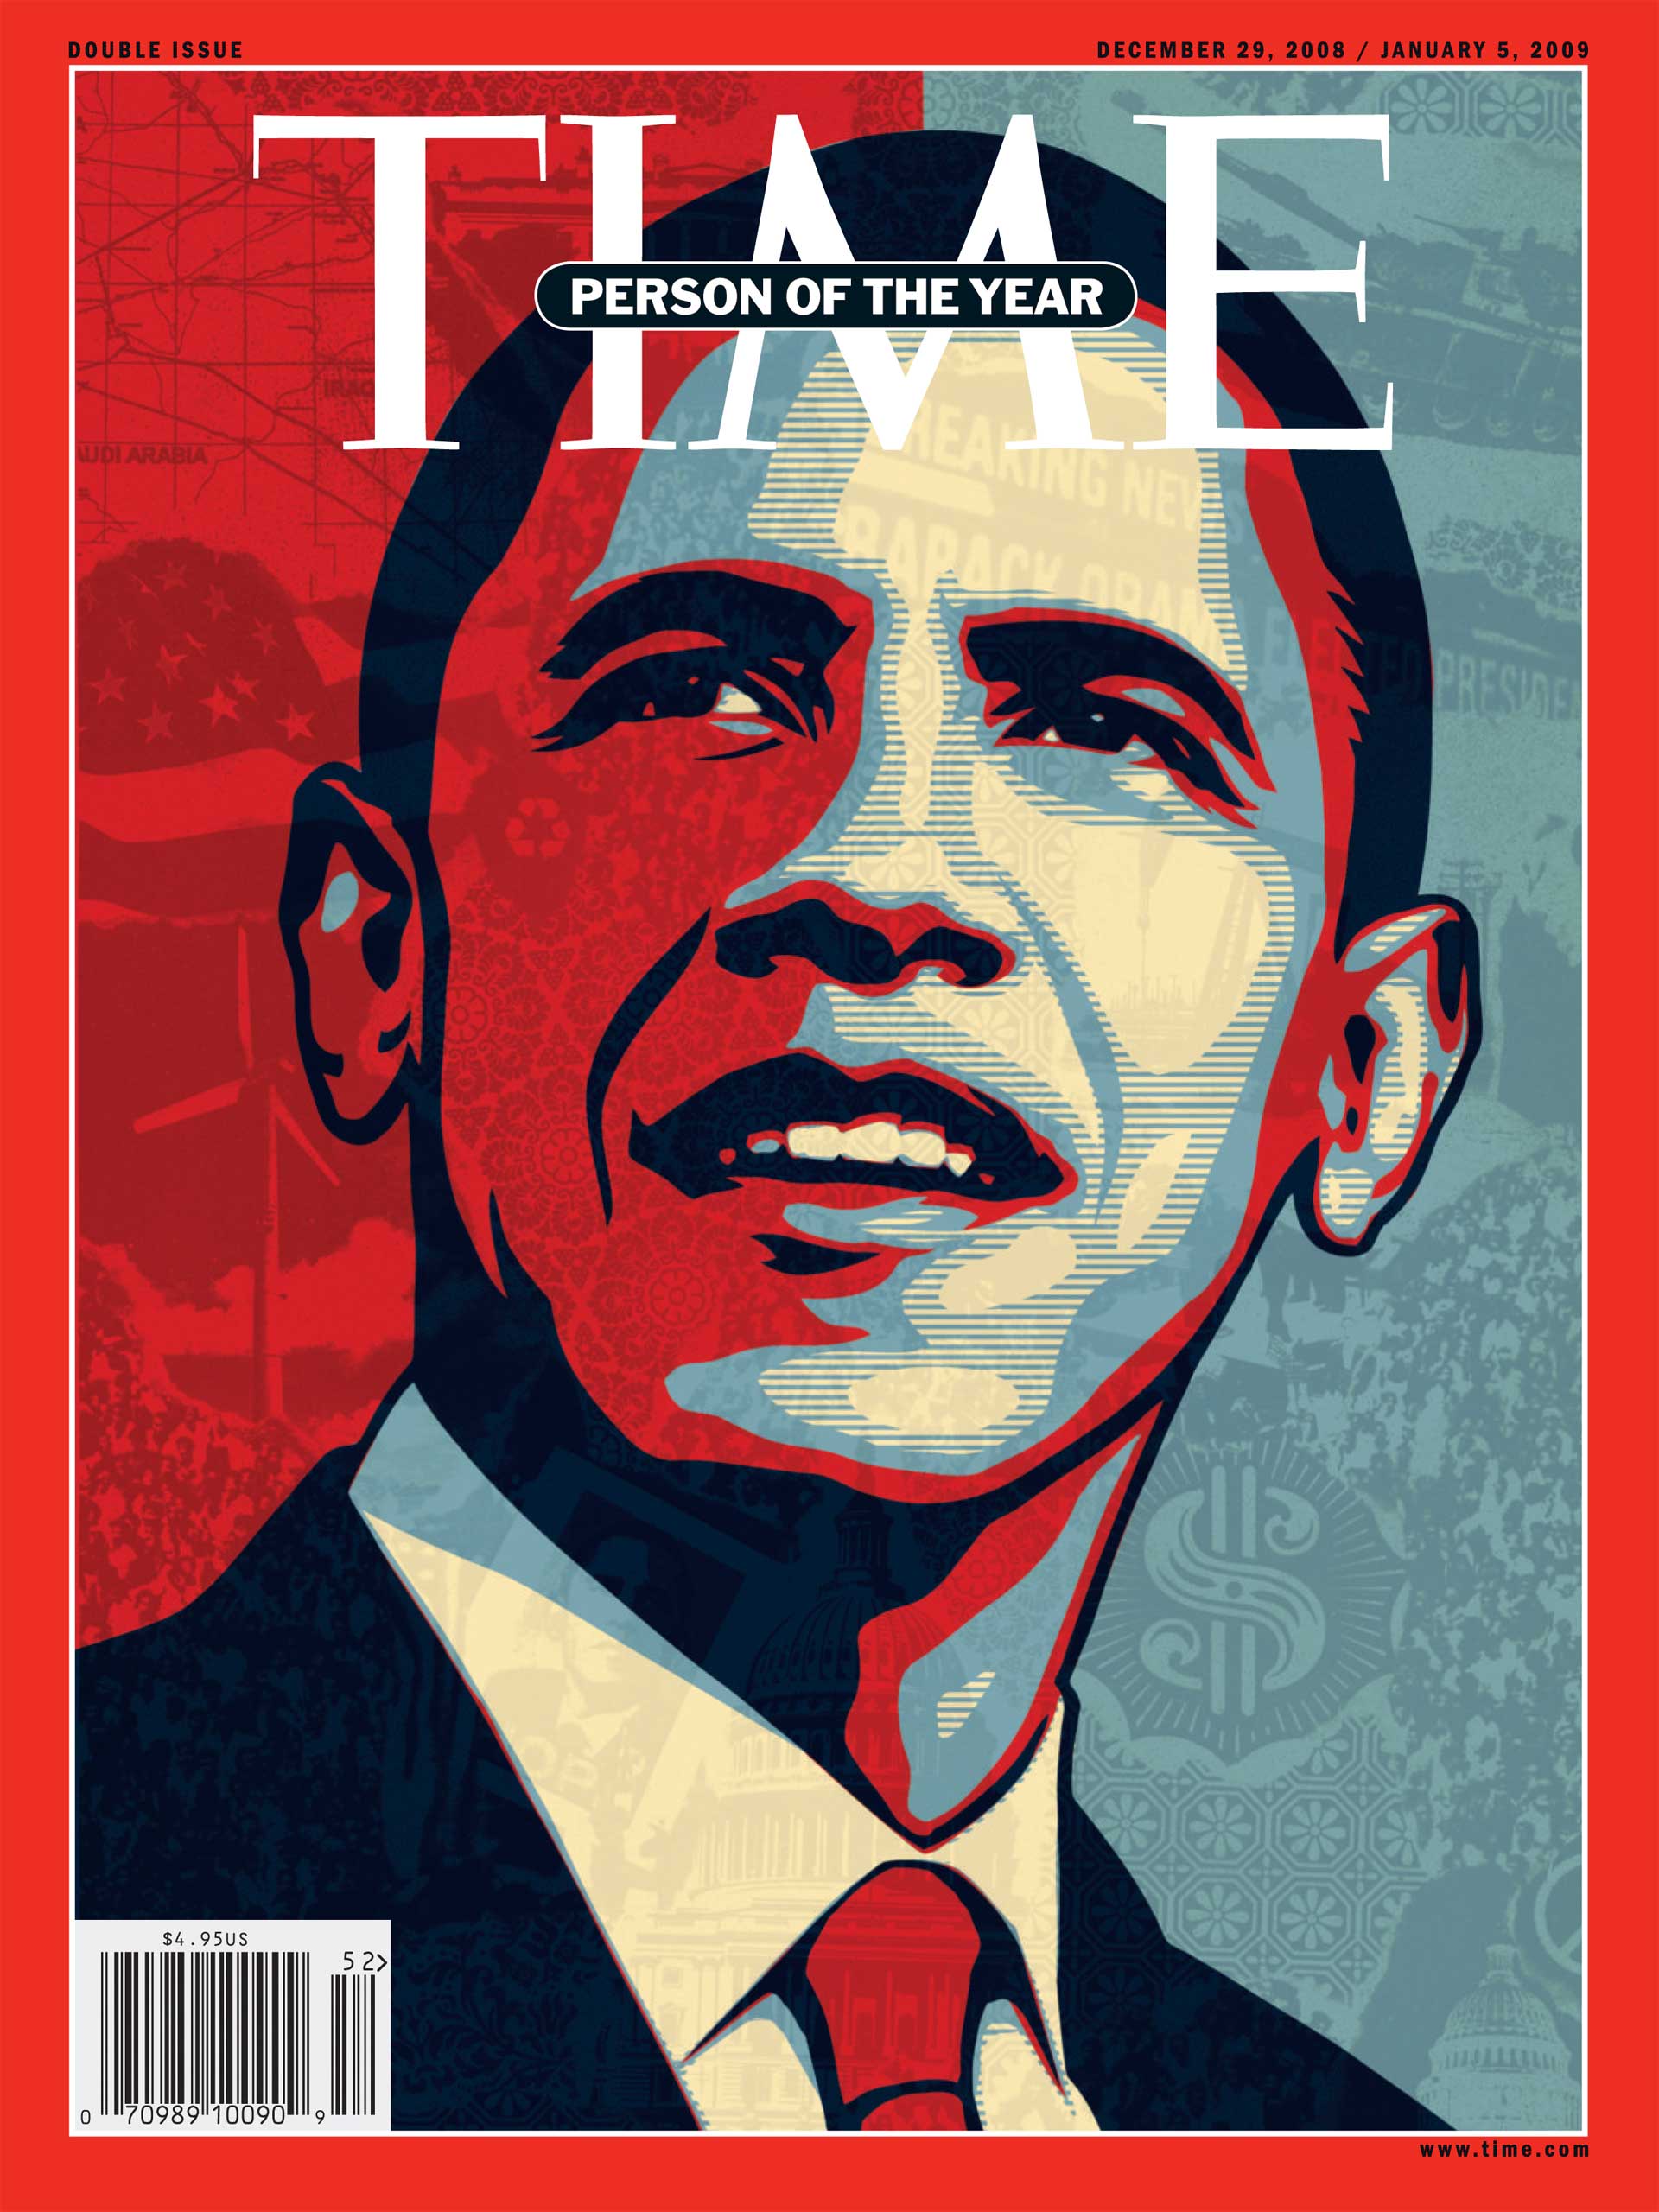 2008: Barack Obama